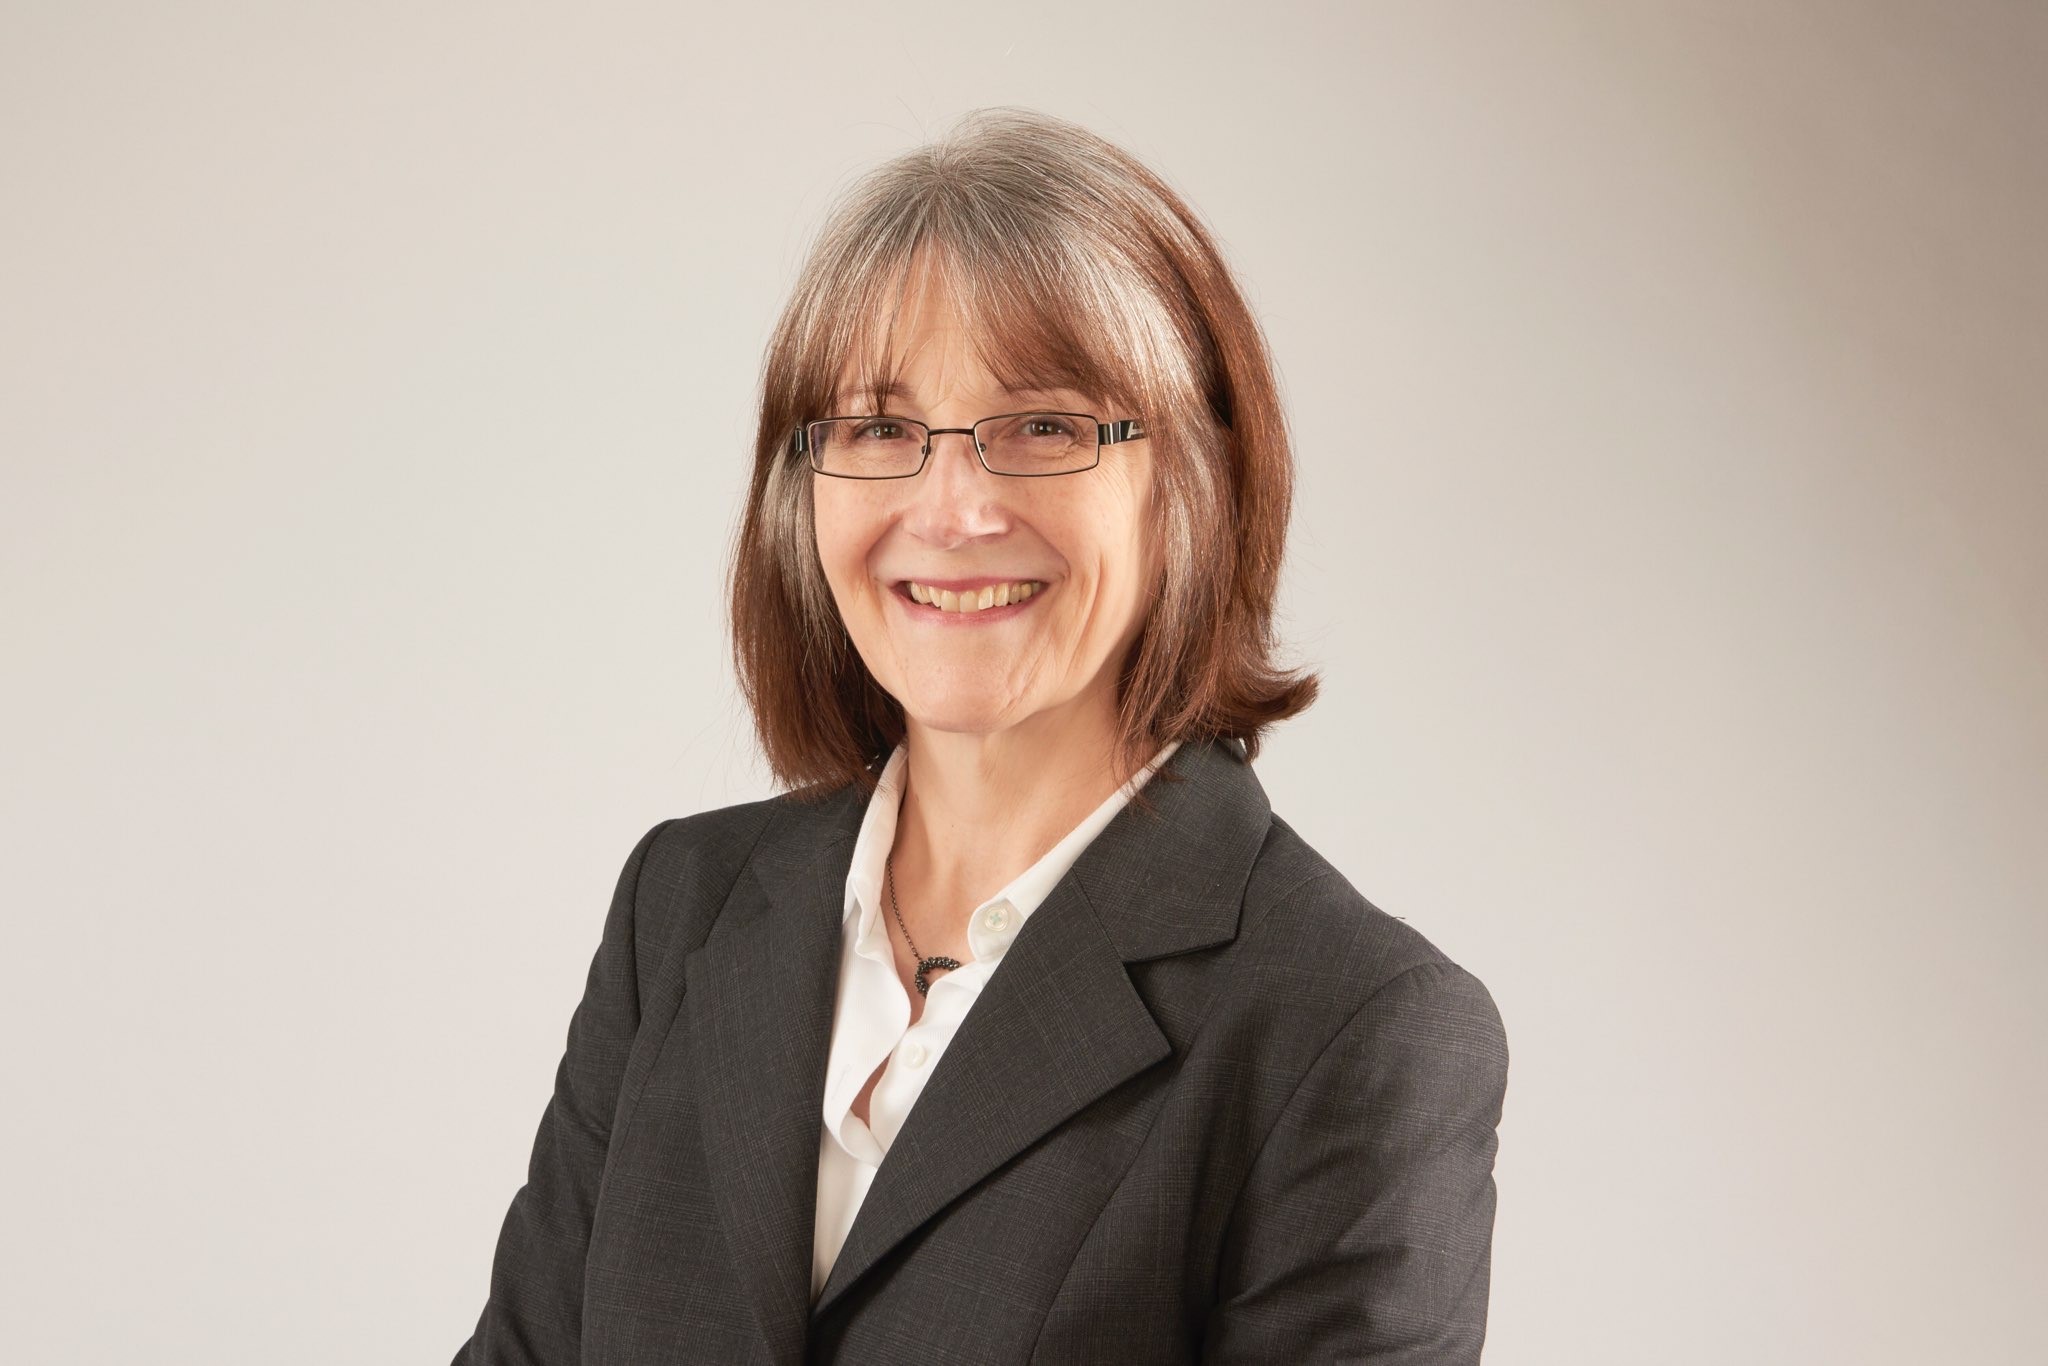  Karen Kneller Board of Trustees 